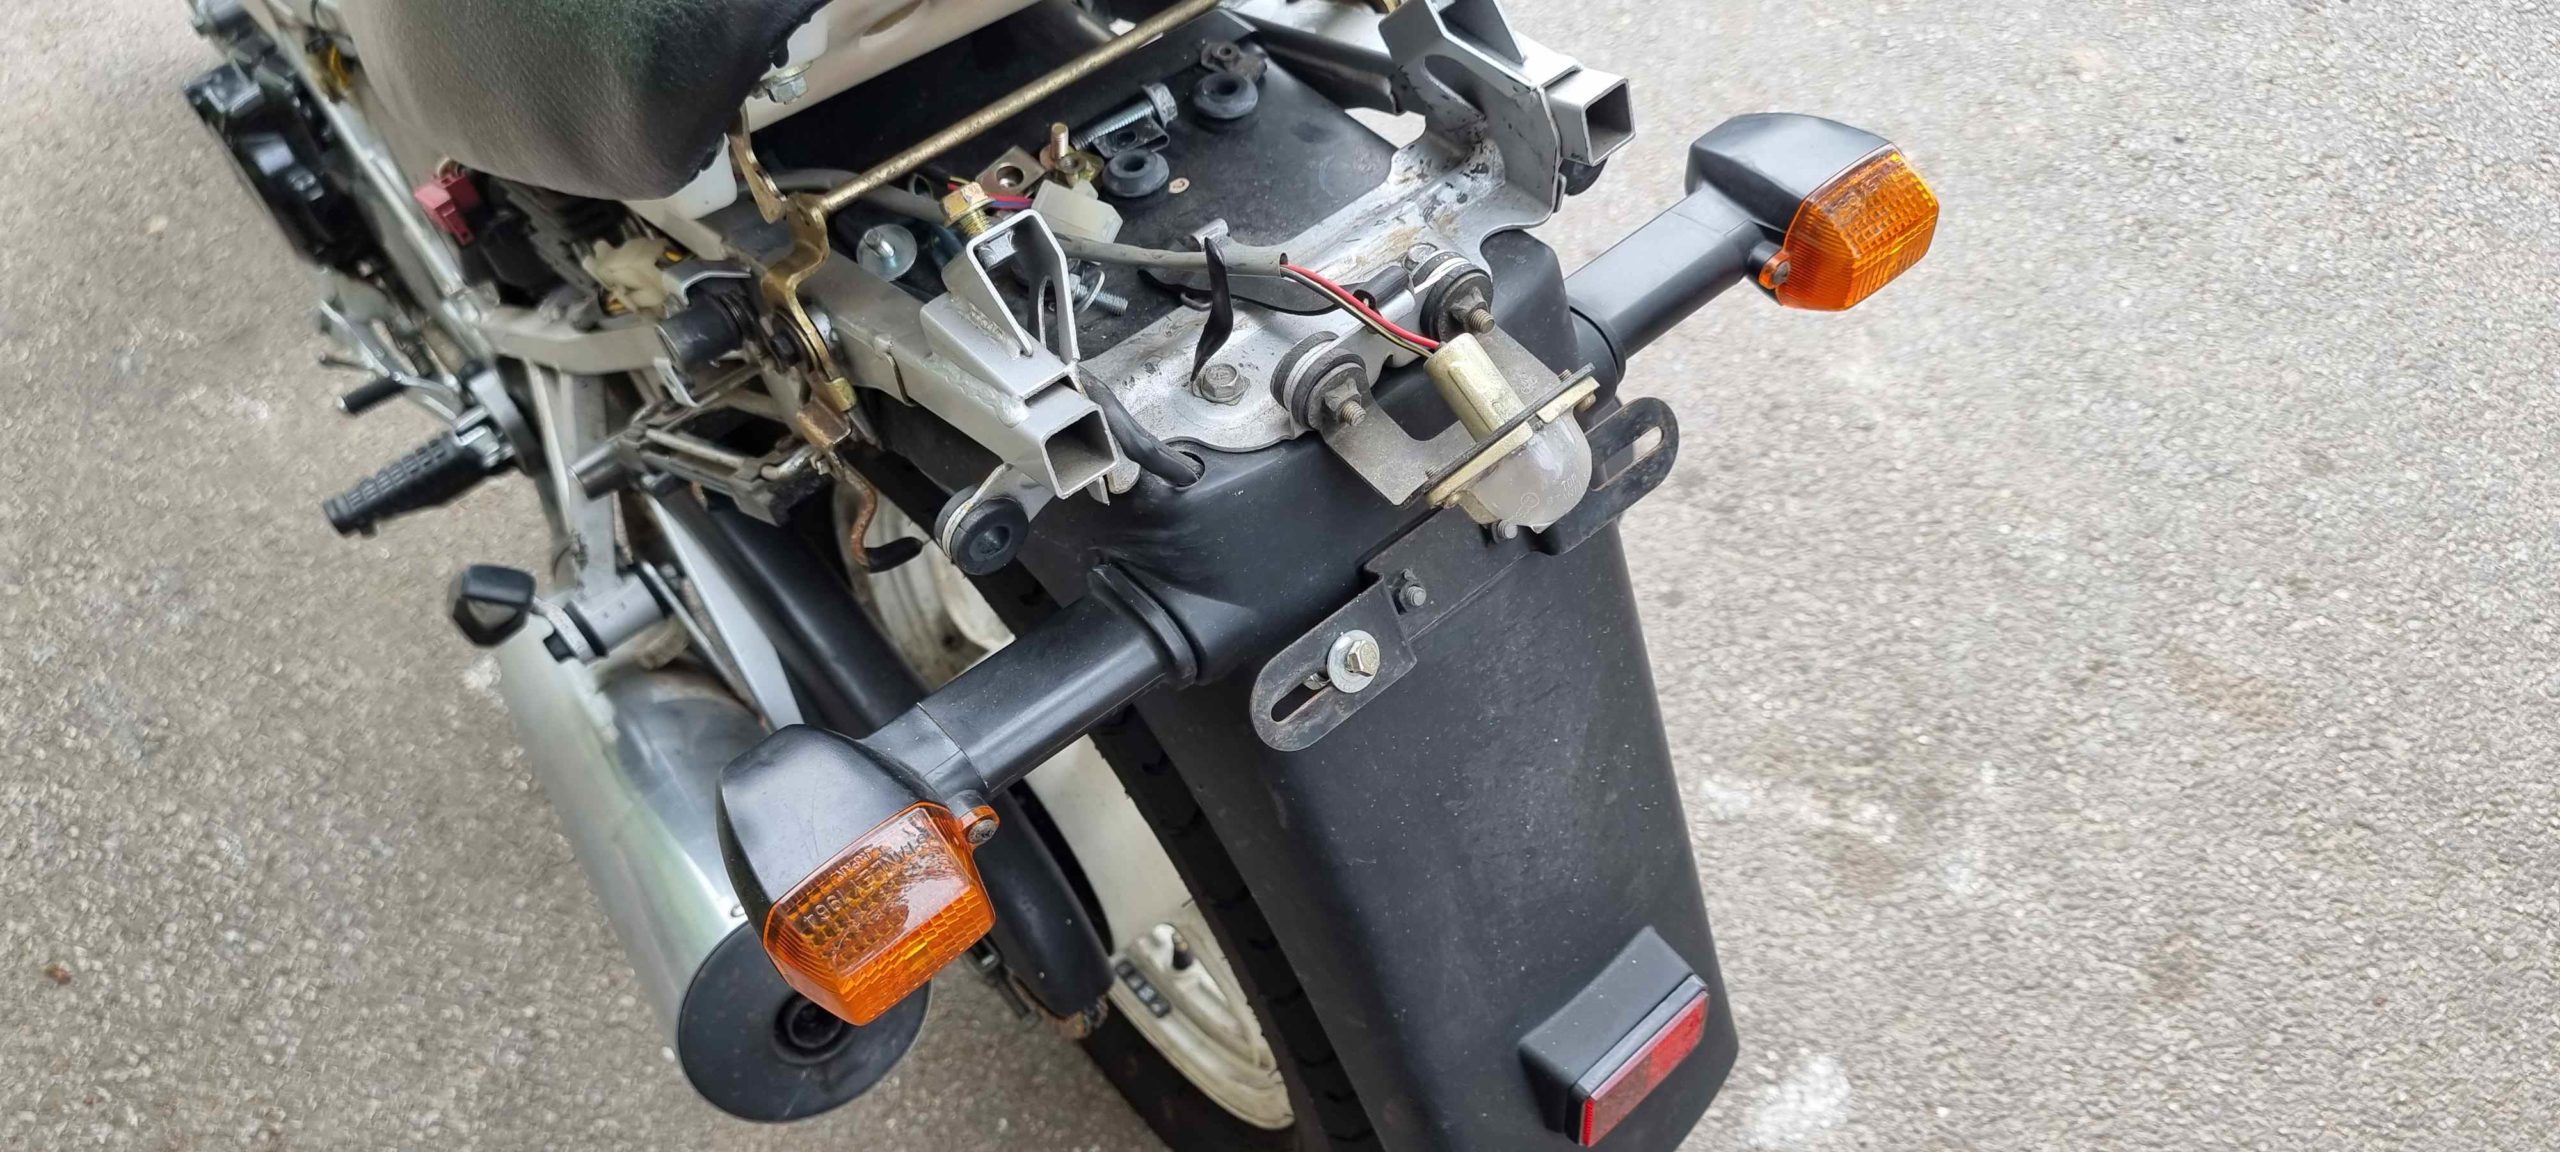 Kawasaki GPZ 500 S EX 500 A Naked Bike Tourer mit 60 PS in schwarz. Mit einer vom Tacho abgelesenen Laufleistung von 37.386 Km. Als Teileträger.